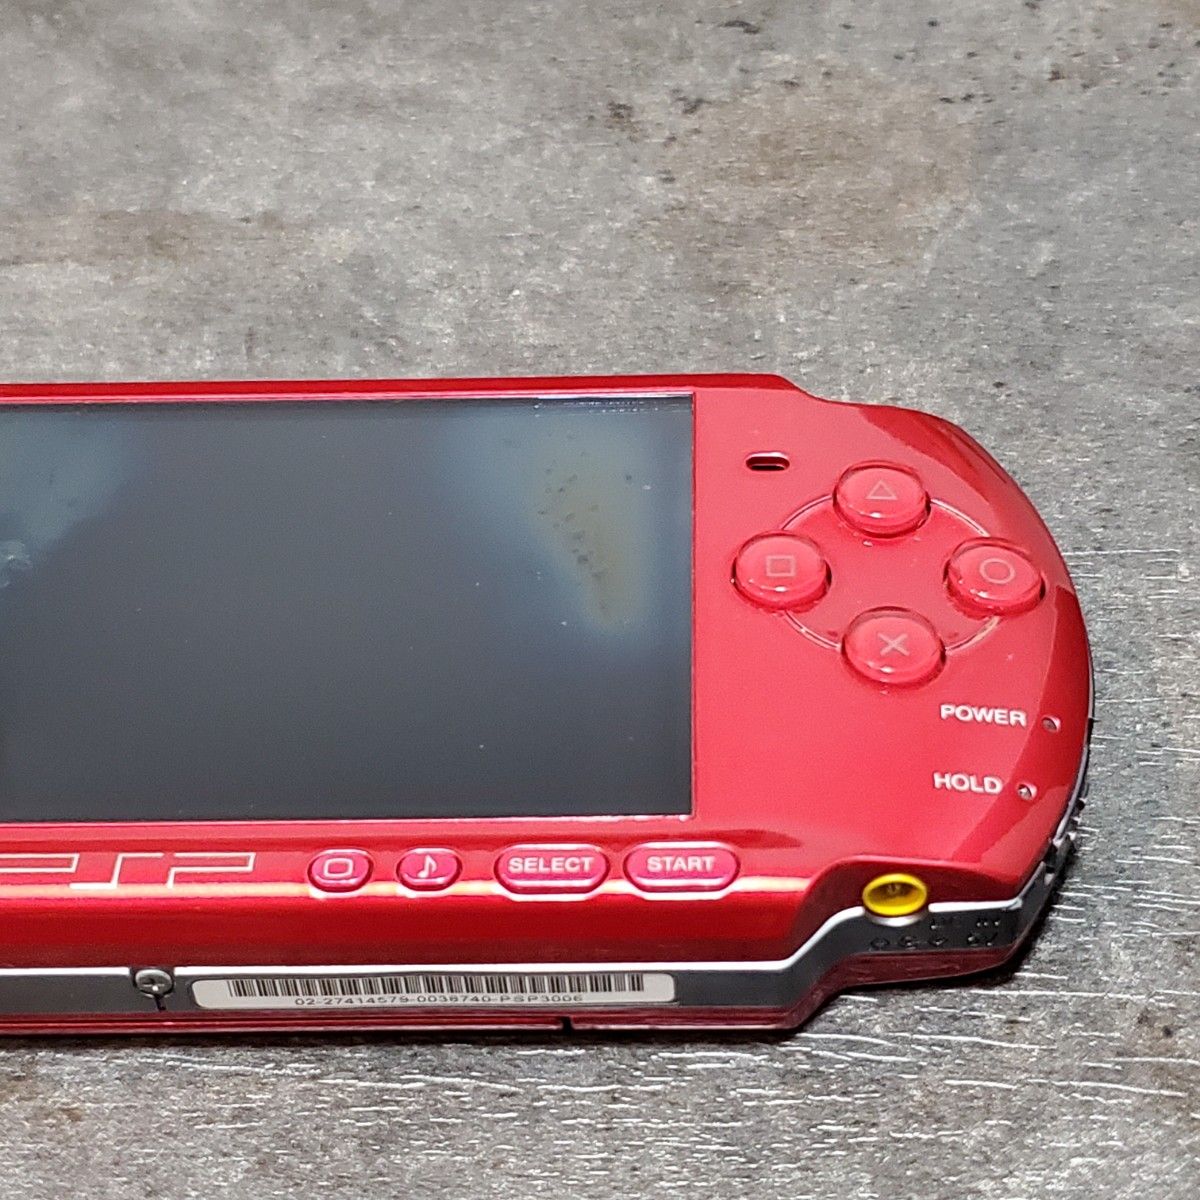 【ジャンク品】輸入版 SONY PSP-3006 ラディアントレッド ソフト付